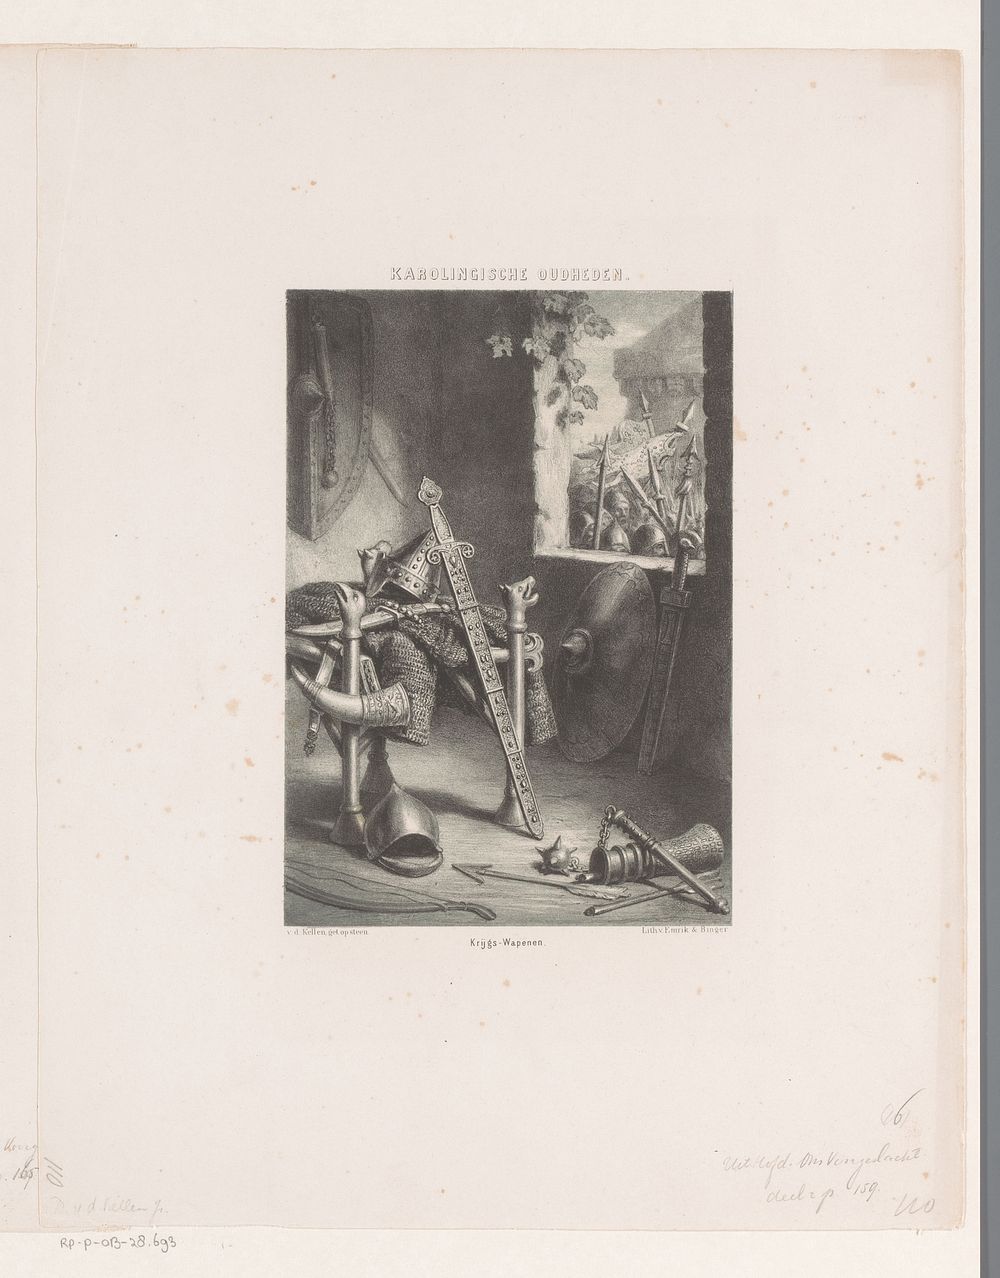 Karolingische wapens (1857 - 1864) by David van der Kellen 1827 1895 and Emrik and Binger